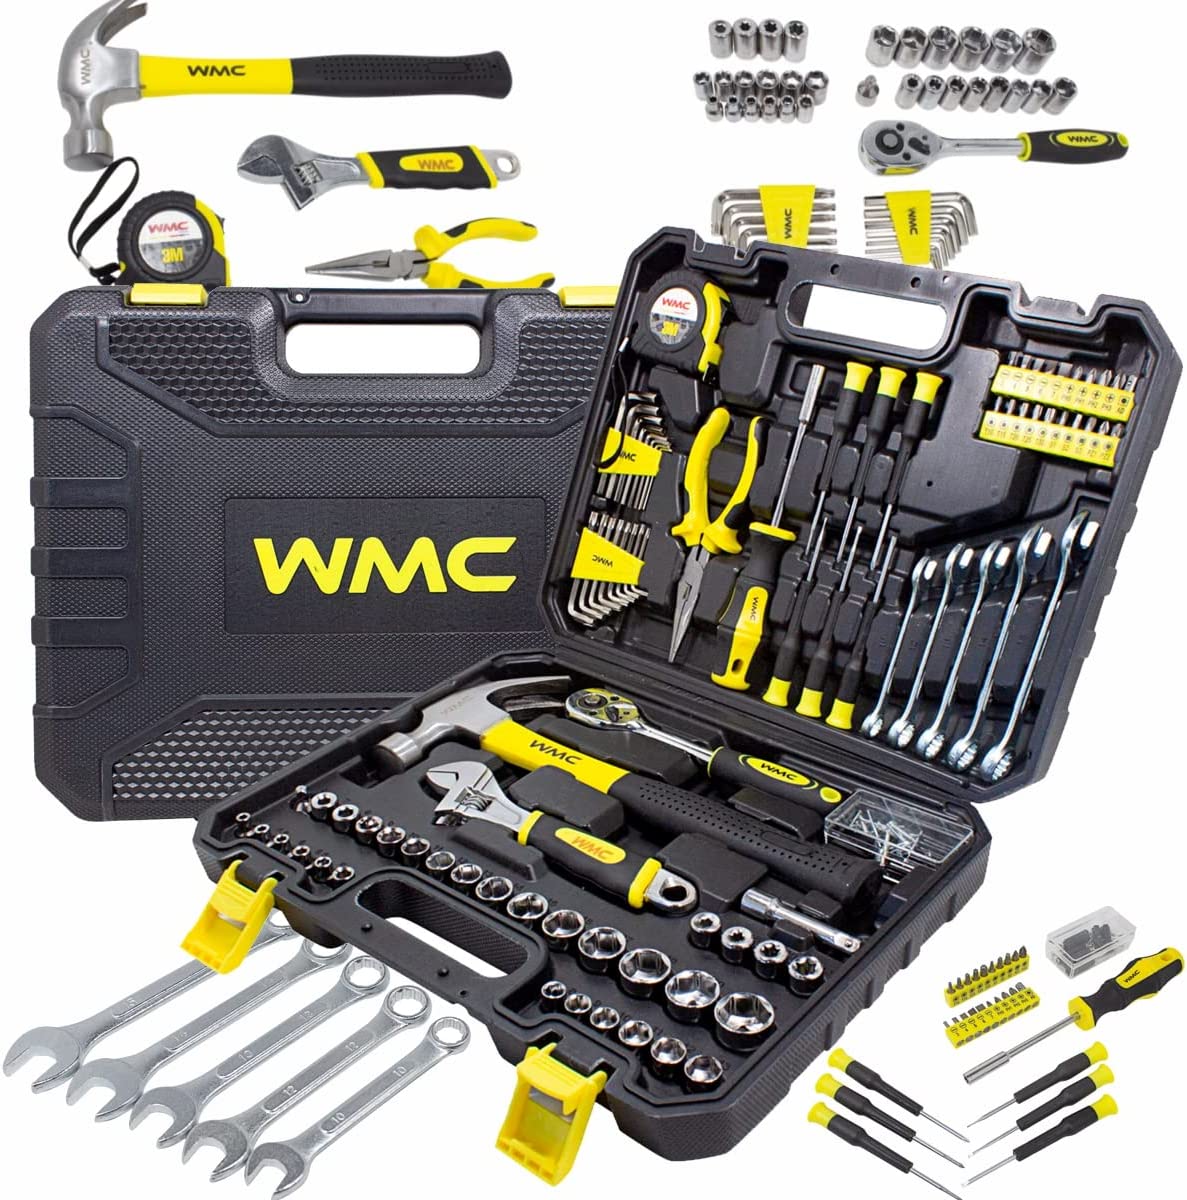 کیت ابزار دستی 128 قطعه WMC A set of tools for home and work 128 pcs for Home - ارسال ۱۰ الی ۱۵ روز کاری